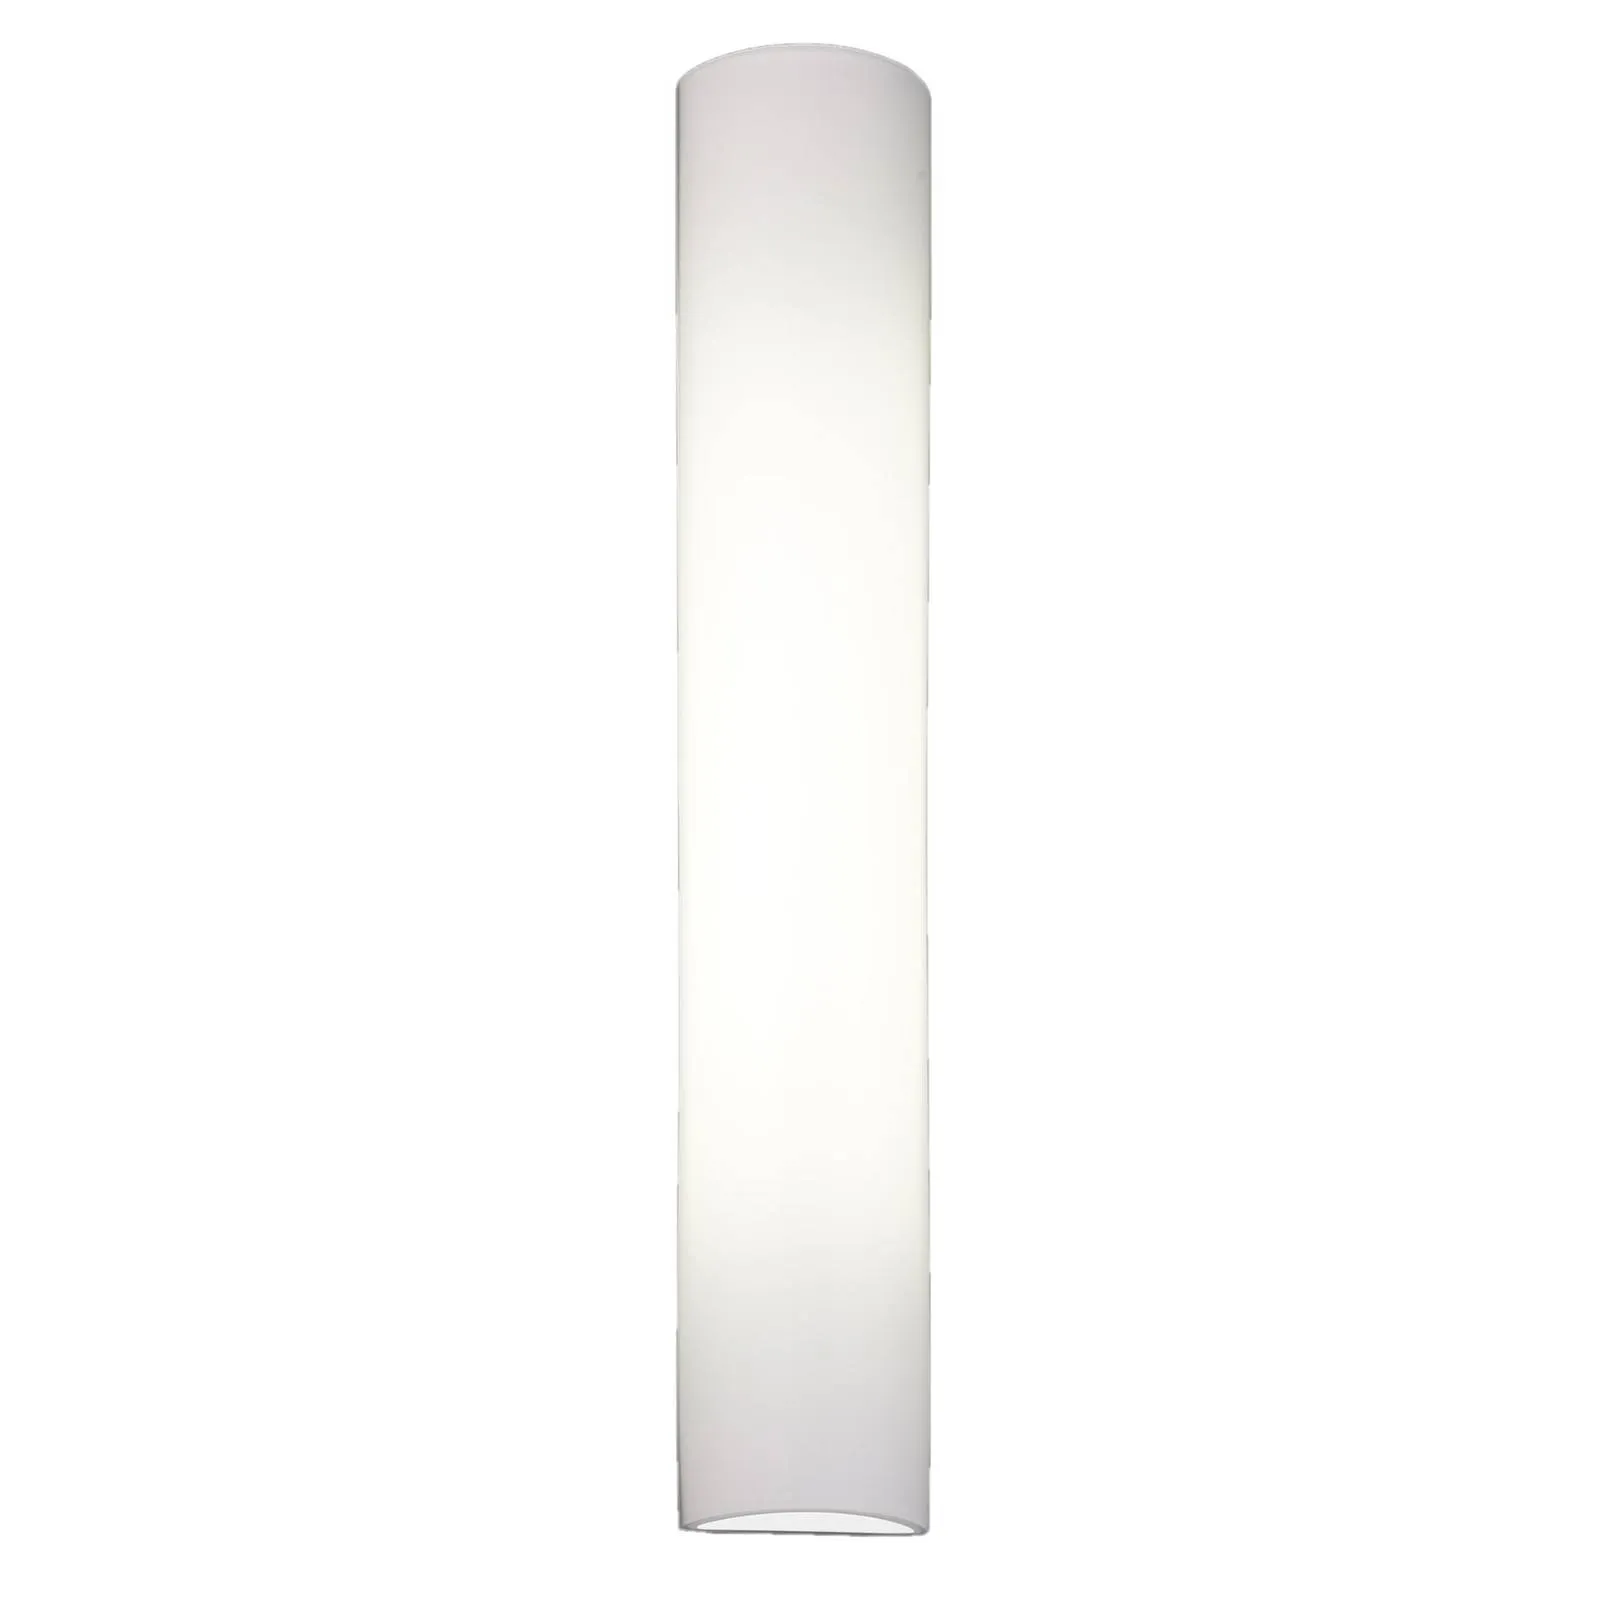 BANKAMP Cromo LED wall light, glass, height 40 cm